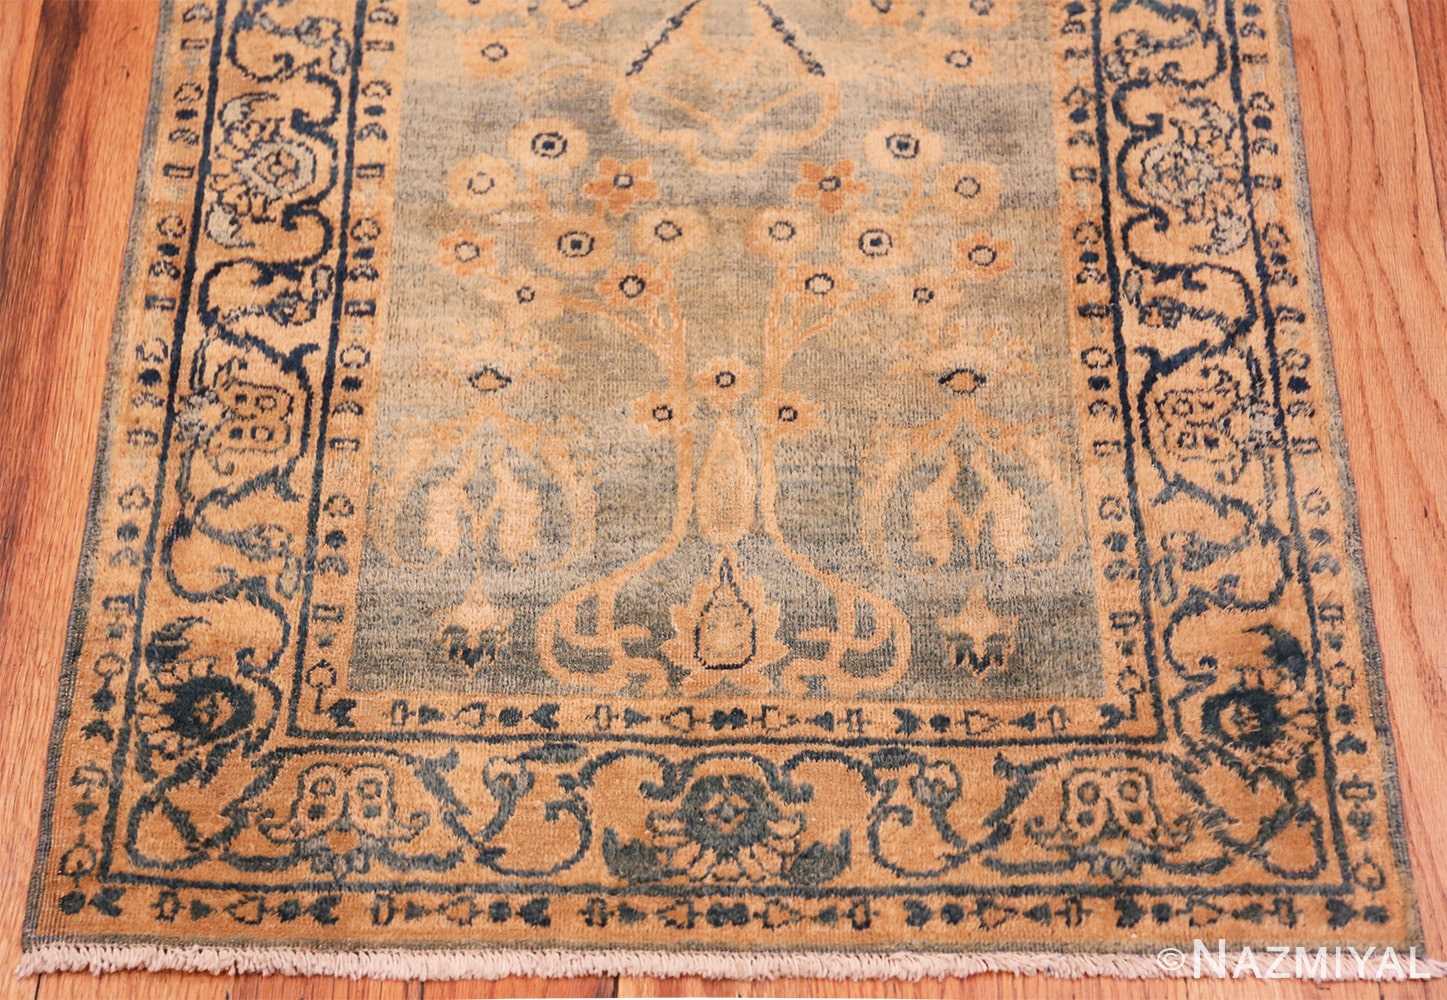 Border Antique Persian Kerman rug 70163 by Nazmiyal